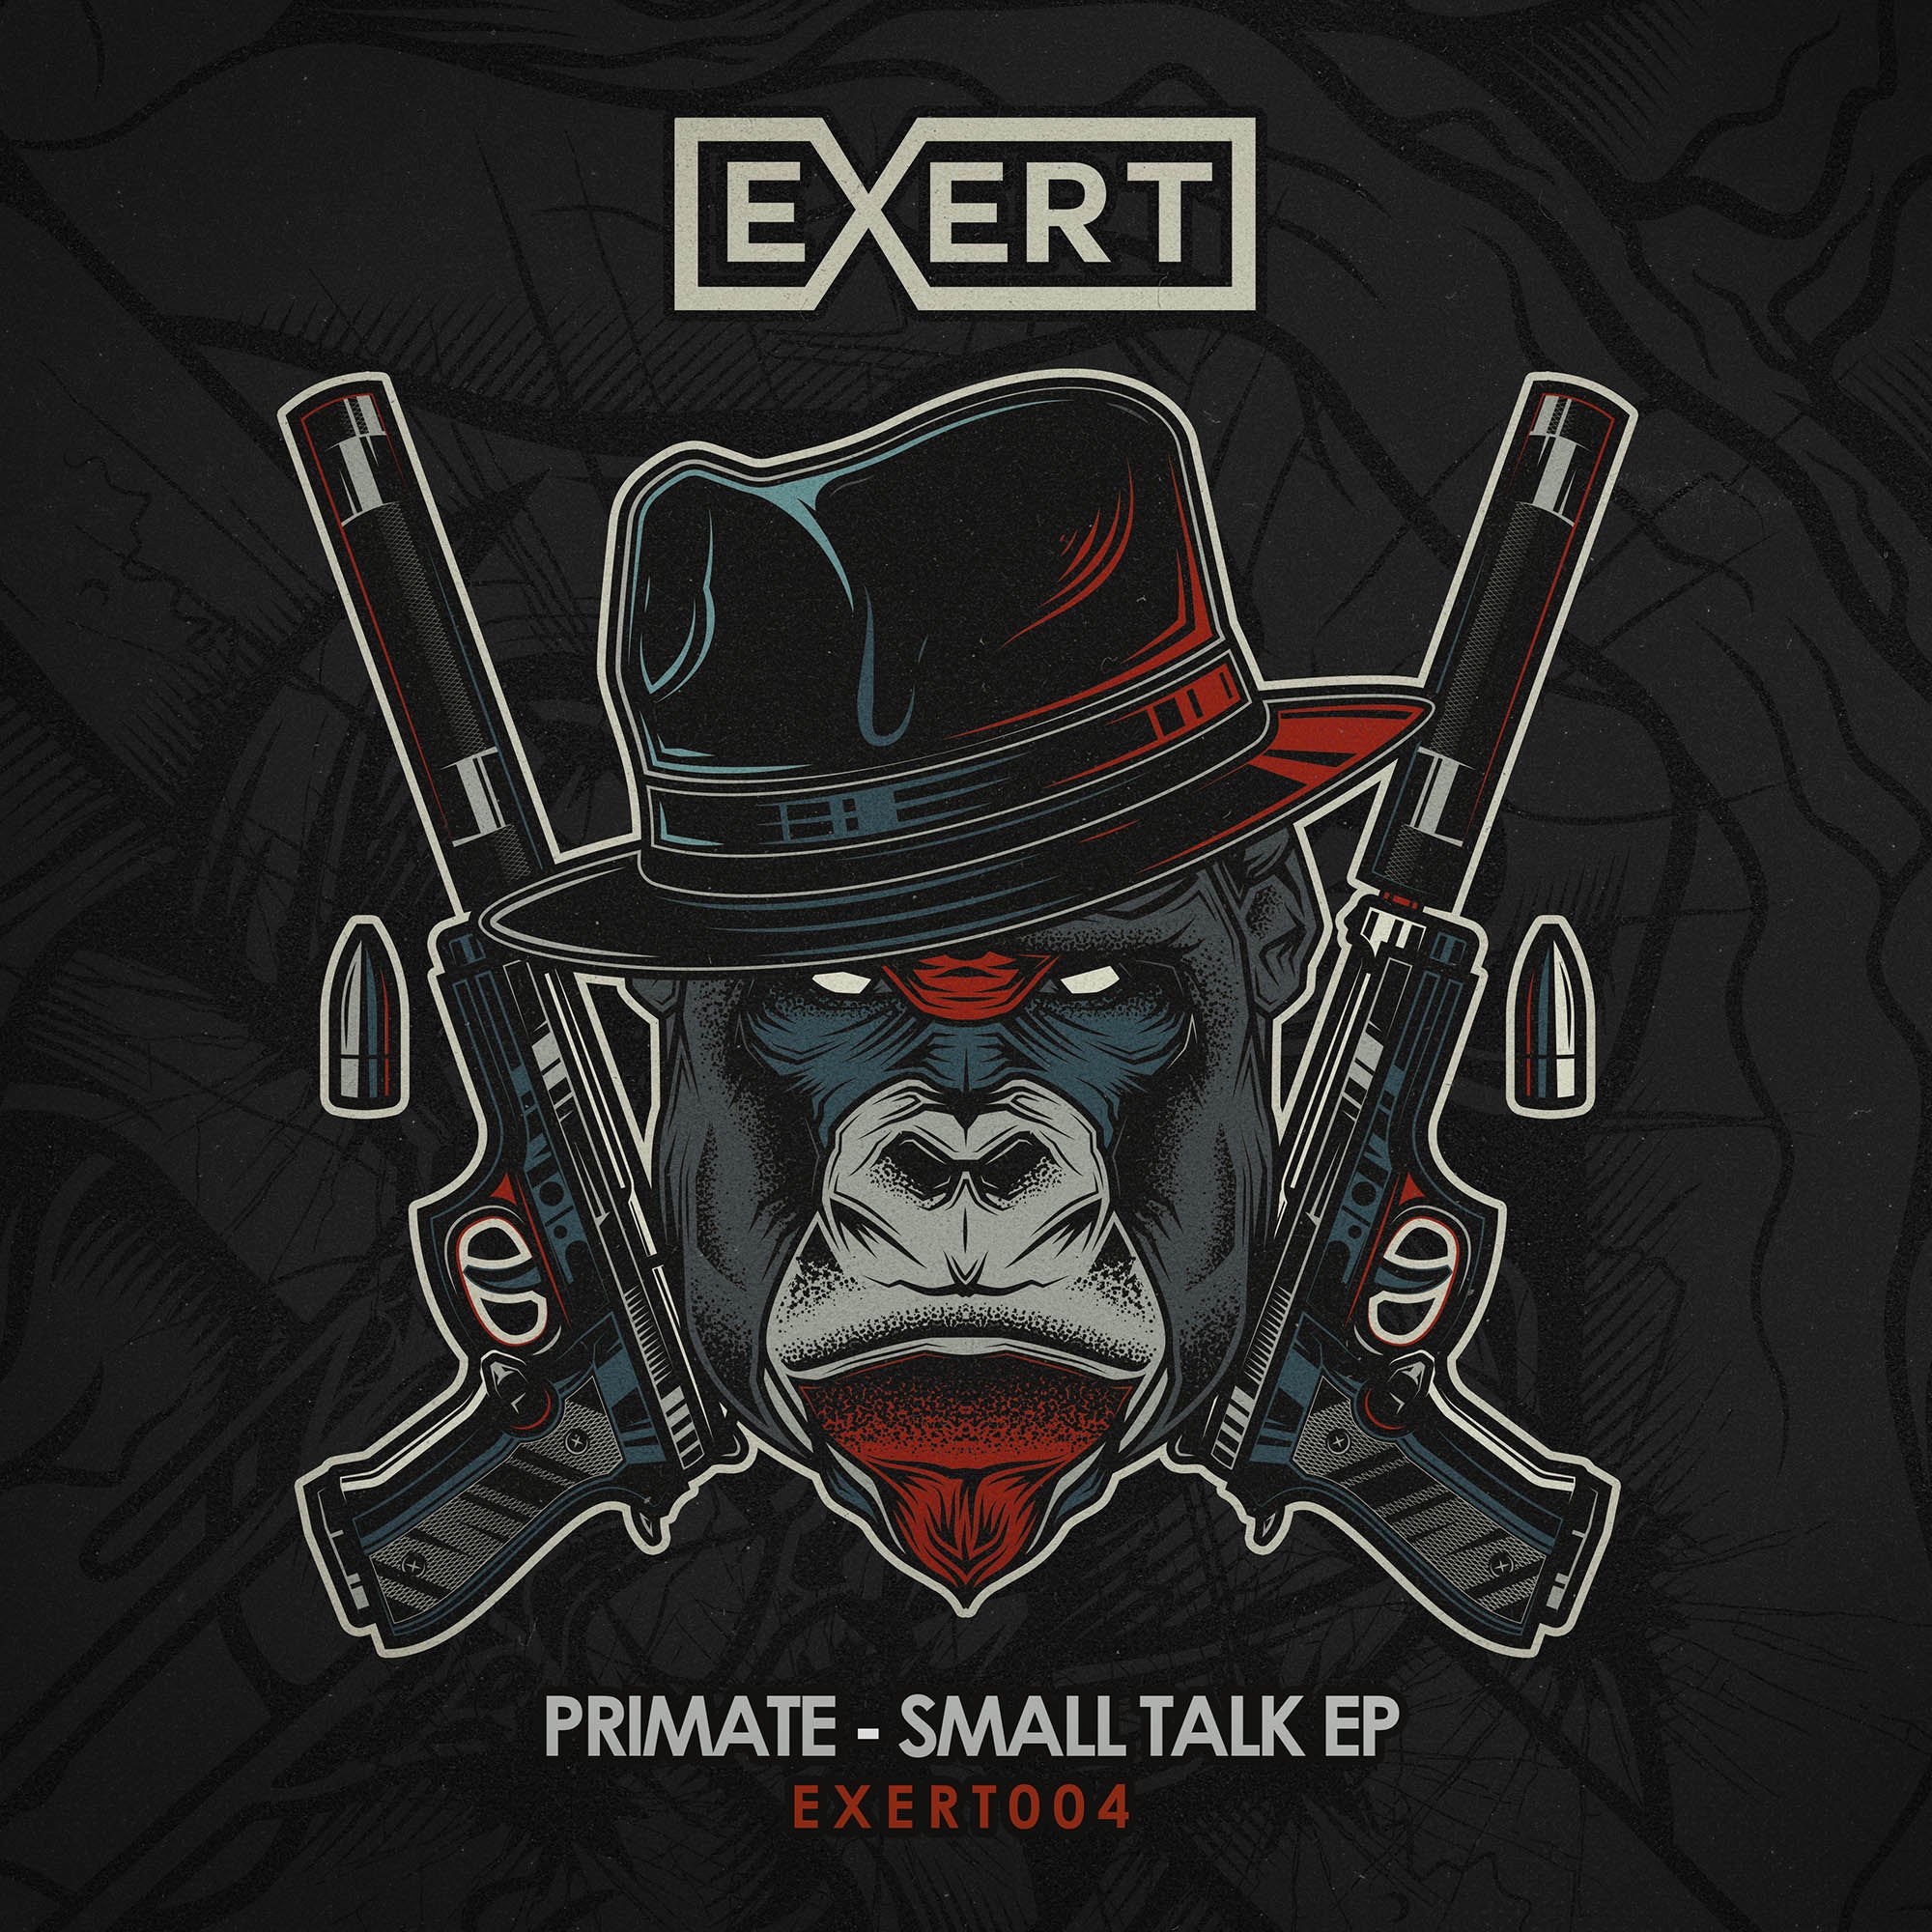 Primate - Small Talk EP